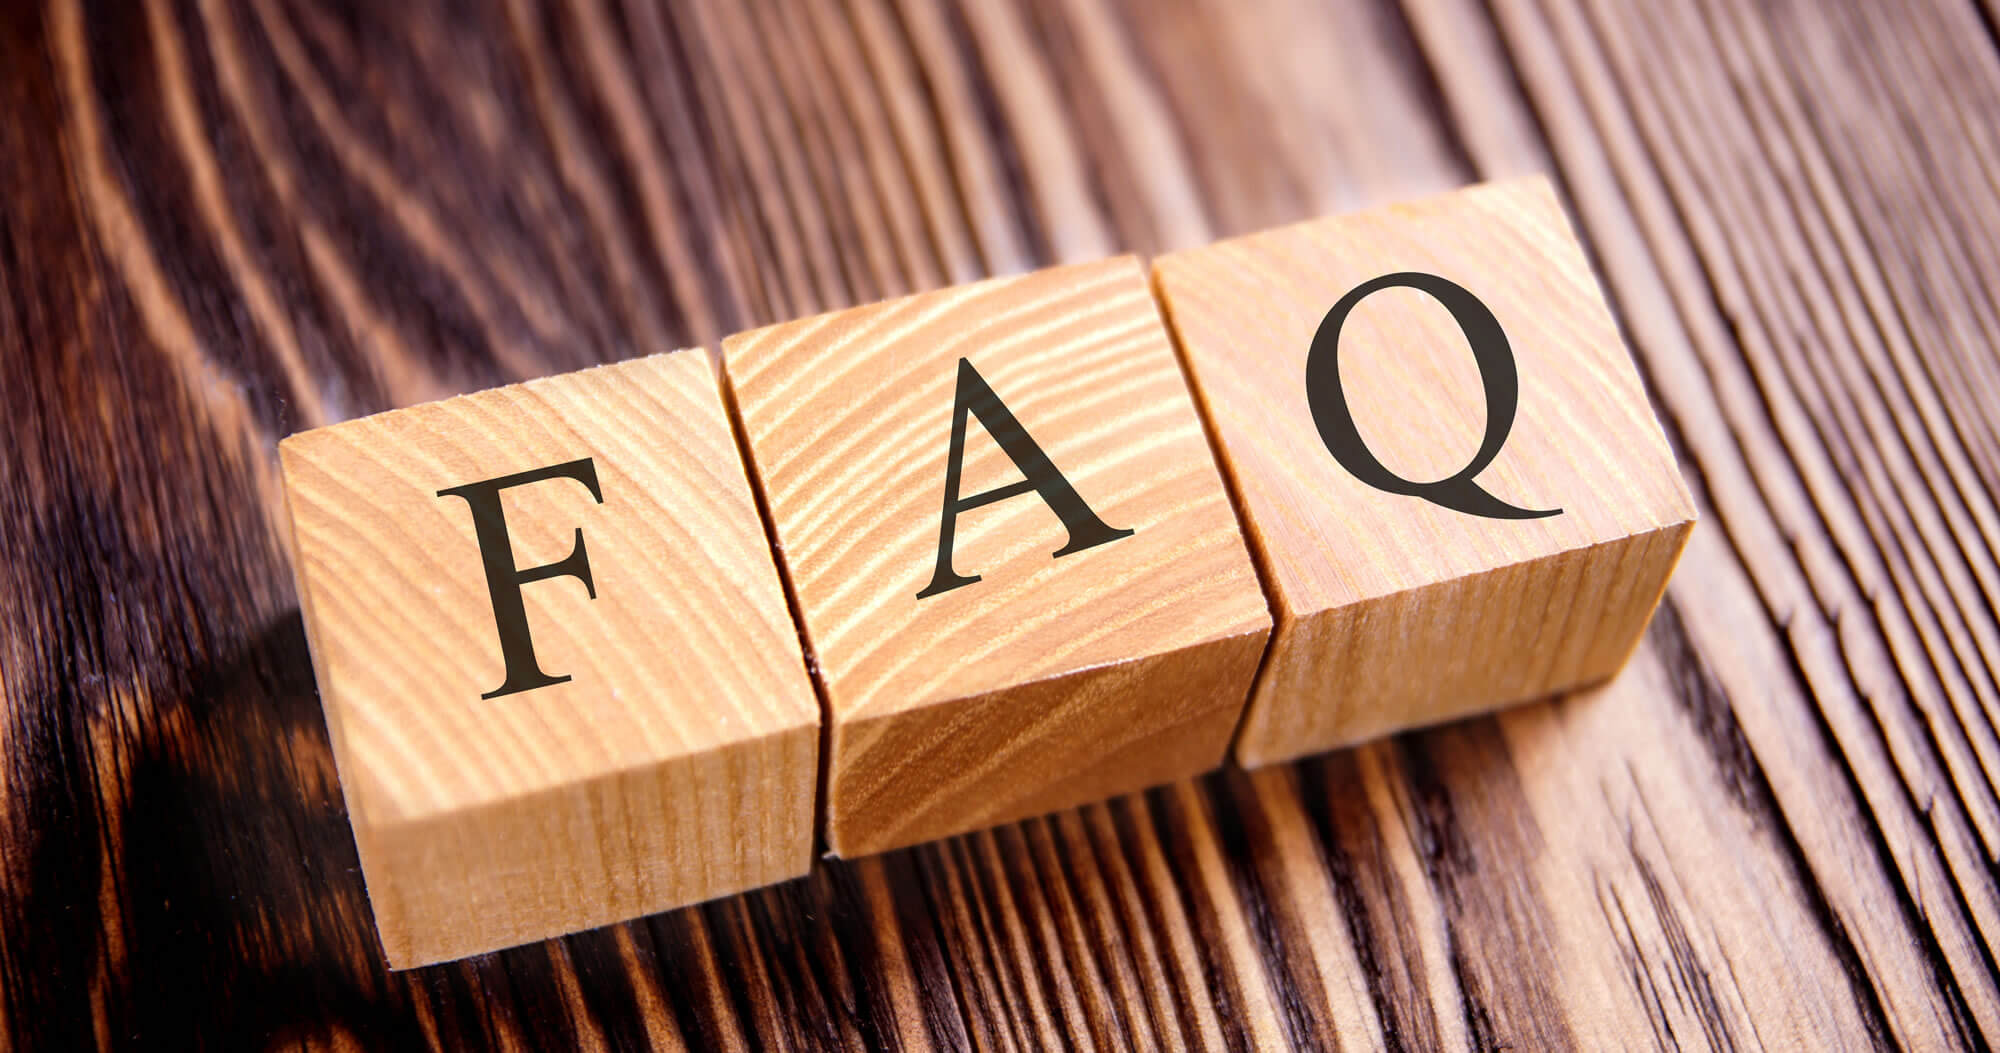 わかりやすい よくある質問 Faq Q A のページの特長とは